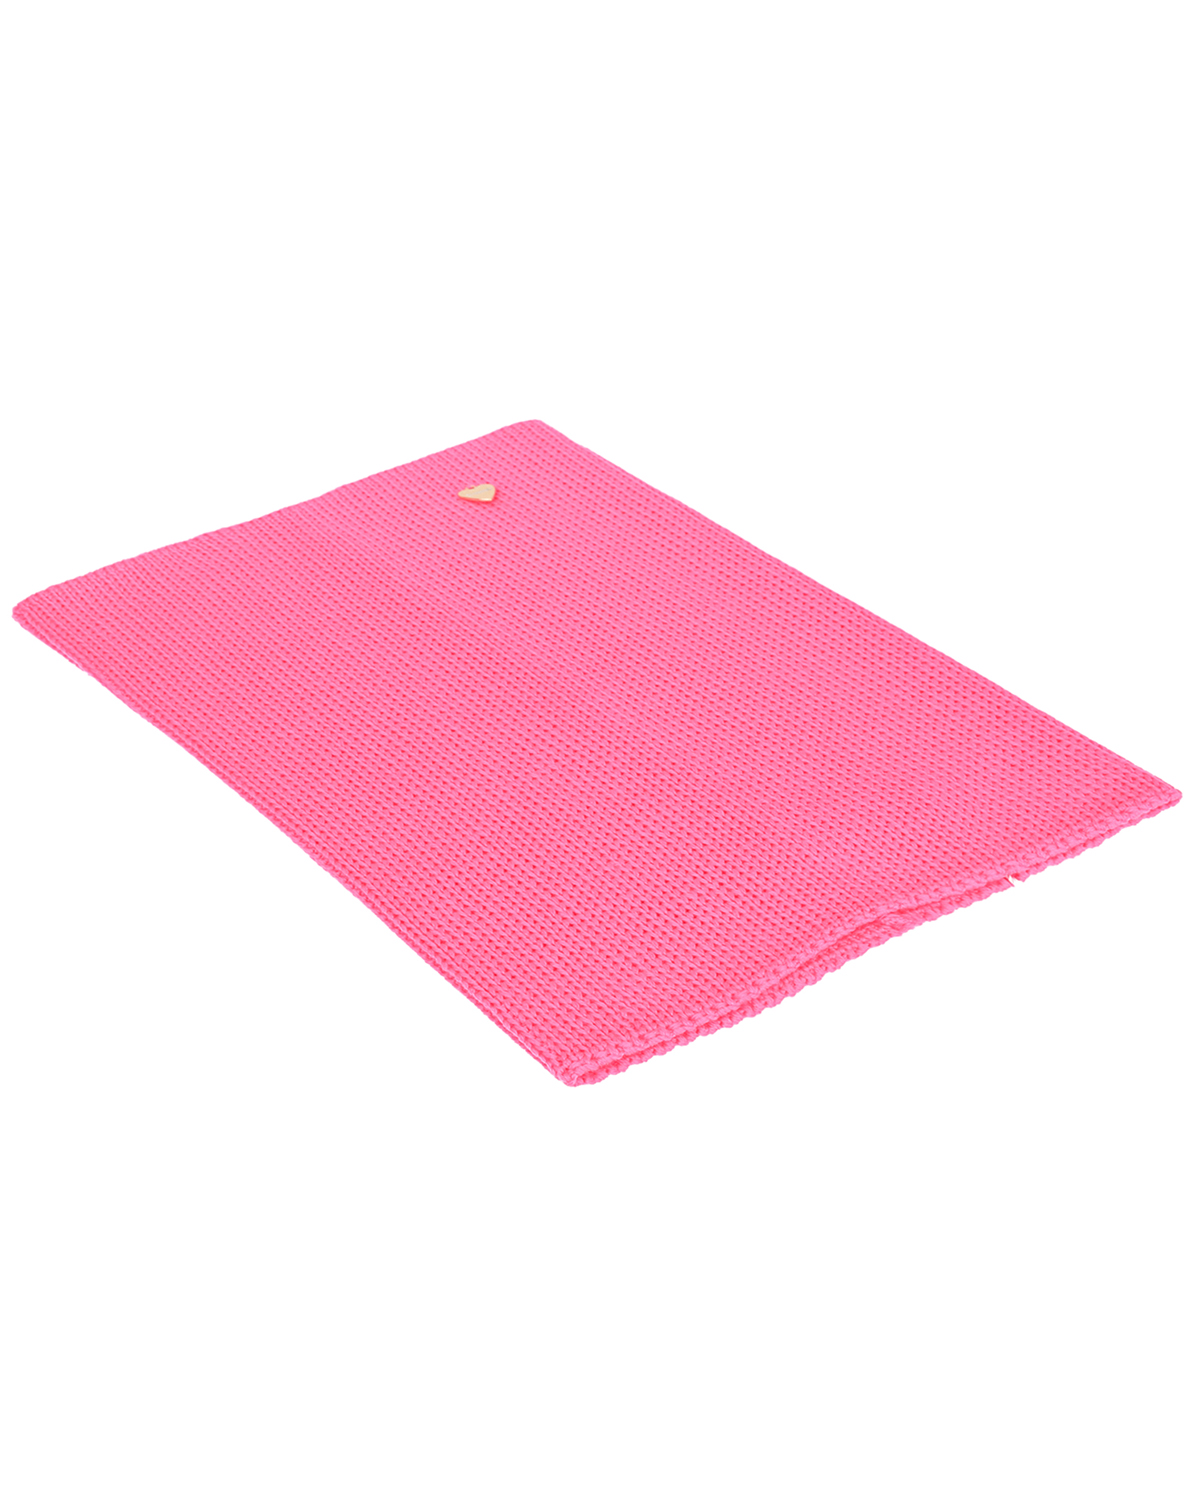 Розовый шарф-ворот из шерсти, 23х33 см Il Trenino детский, размер unica - фото 1